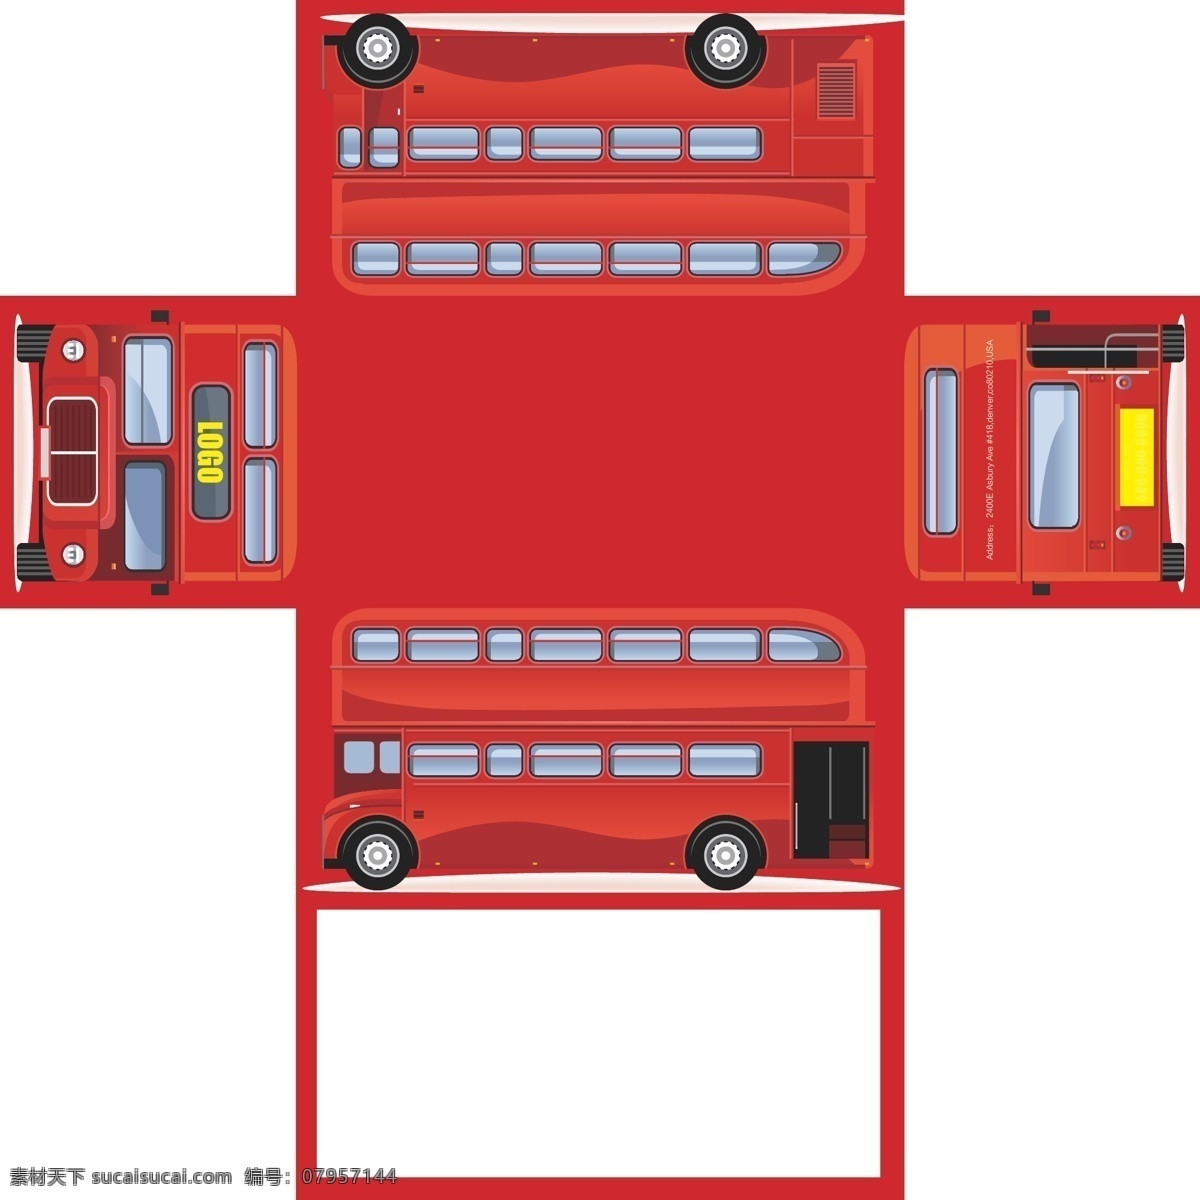 创意 矢量 卡通 伦敦 双层 巴士 抽 纸盒 抽纸盒 包装设计 红色 双层巴士 英国巴士 抽纸盒展开图